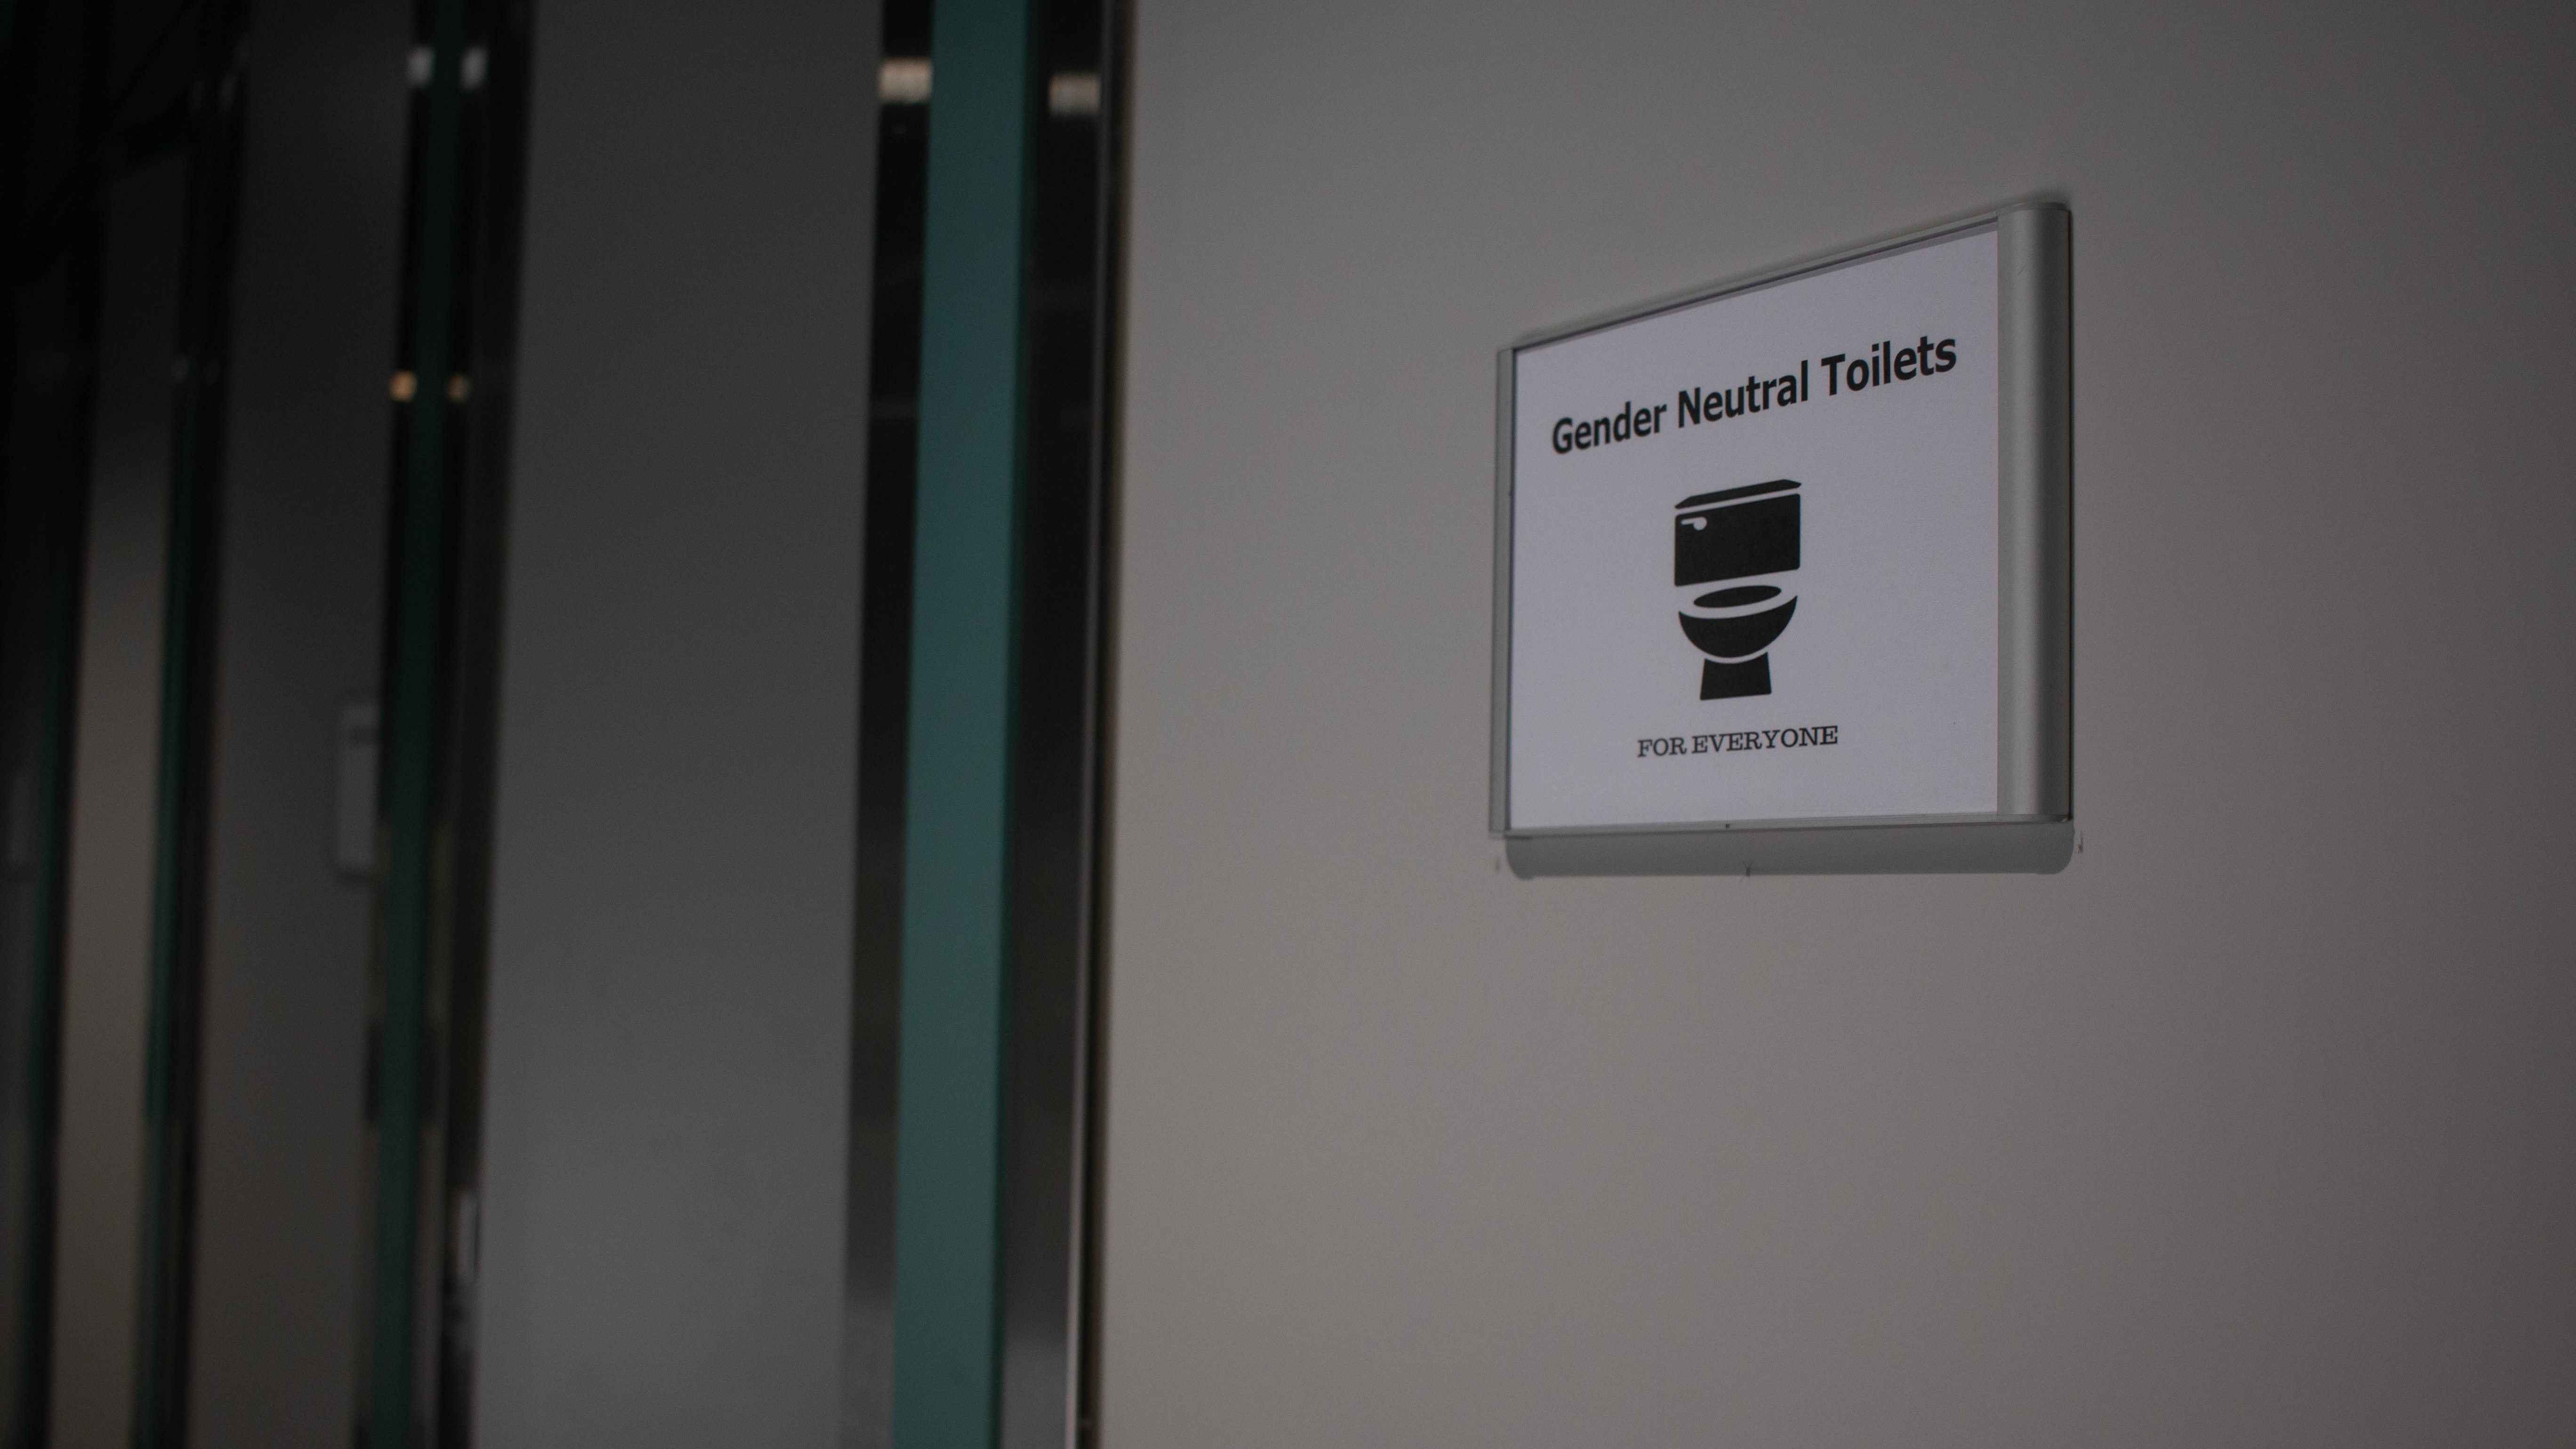 KU student demands more gender neutral toilets